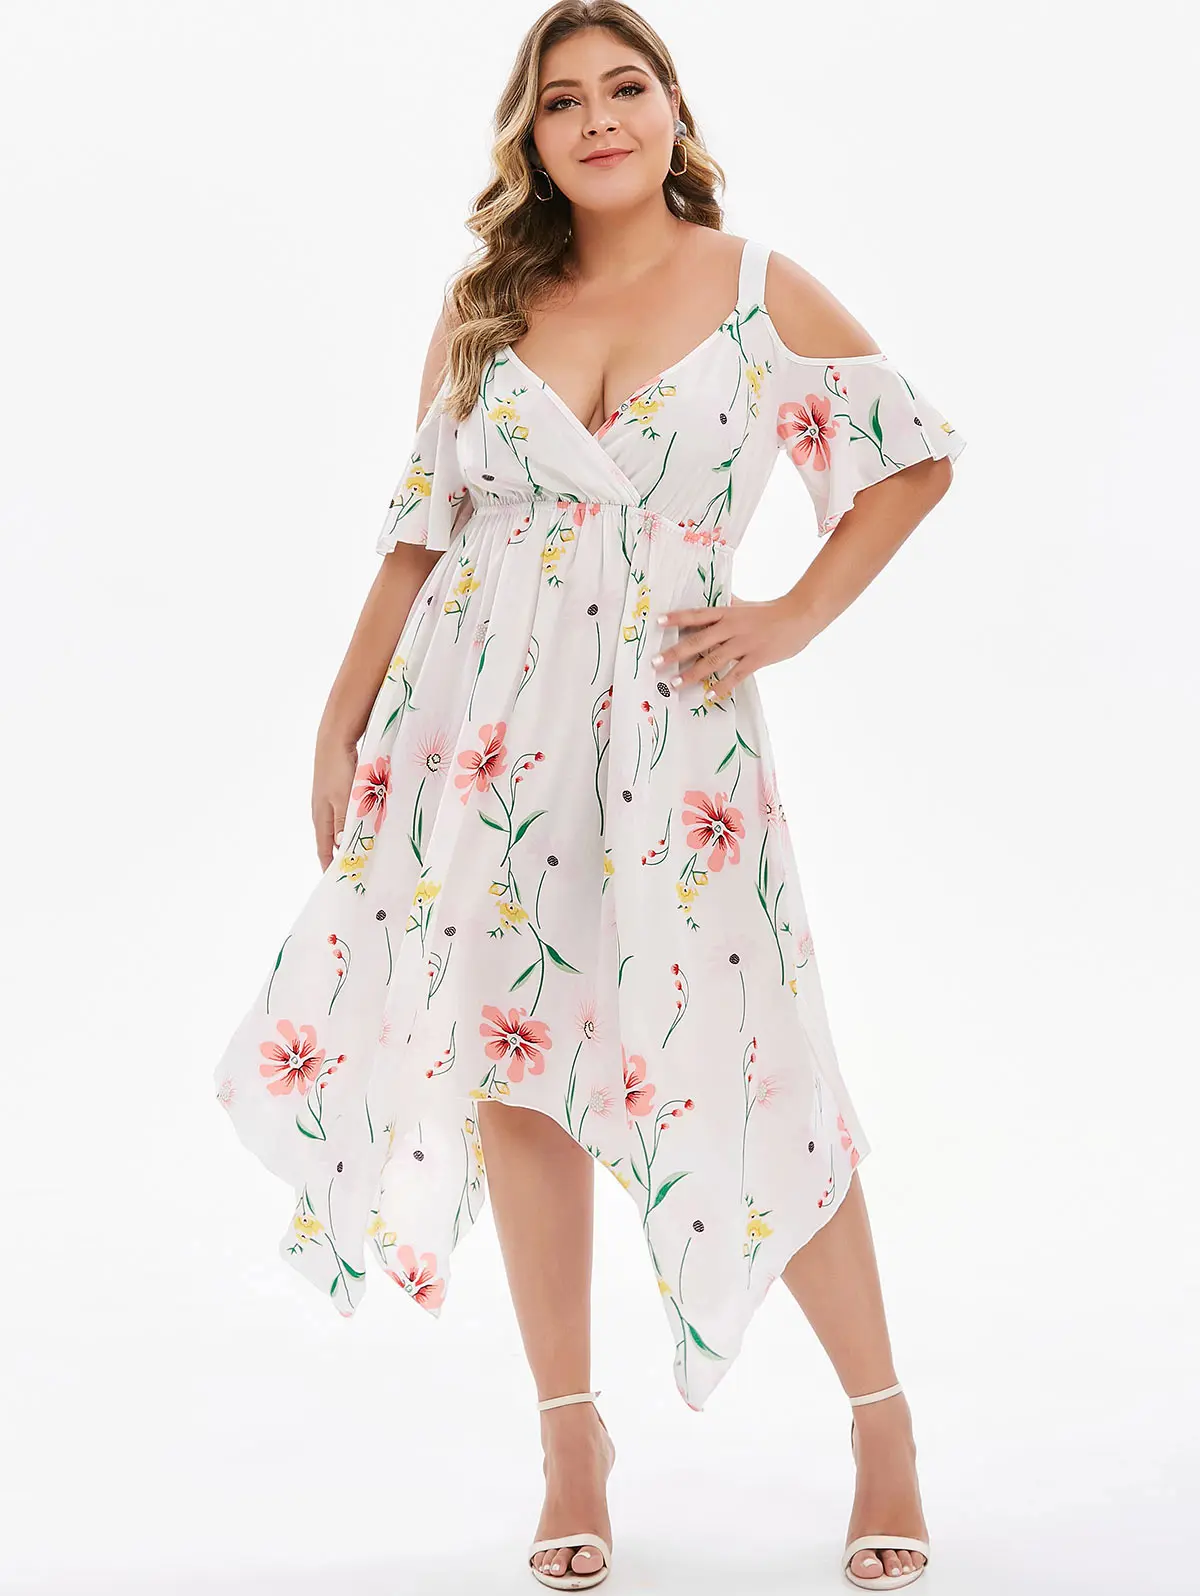 Wipalo размера плюс с коротким рукавом летнее пляжное платье в стиле бохо с открытыми плечами платье с платком цветочный принт женское платье Vestidos Femme - Цвет: White